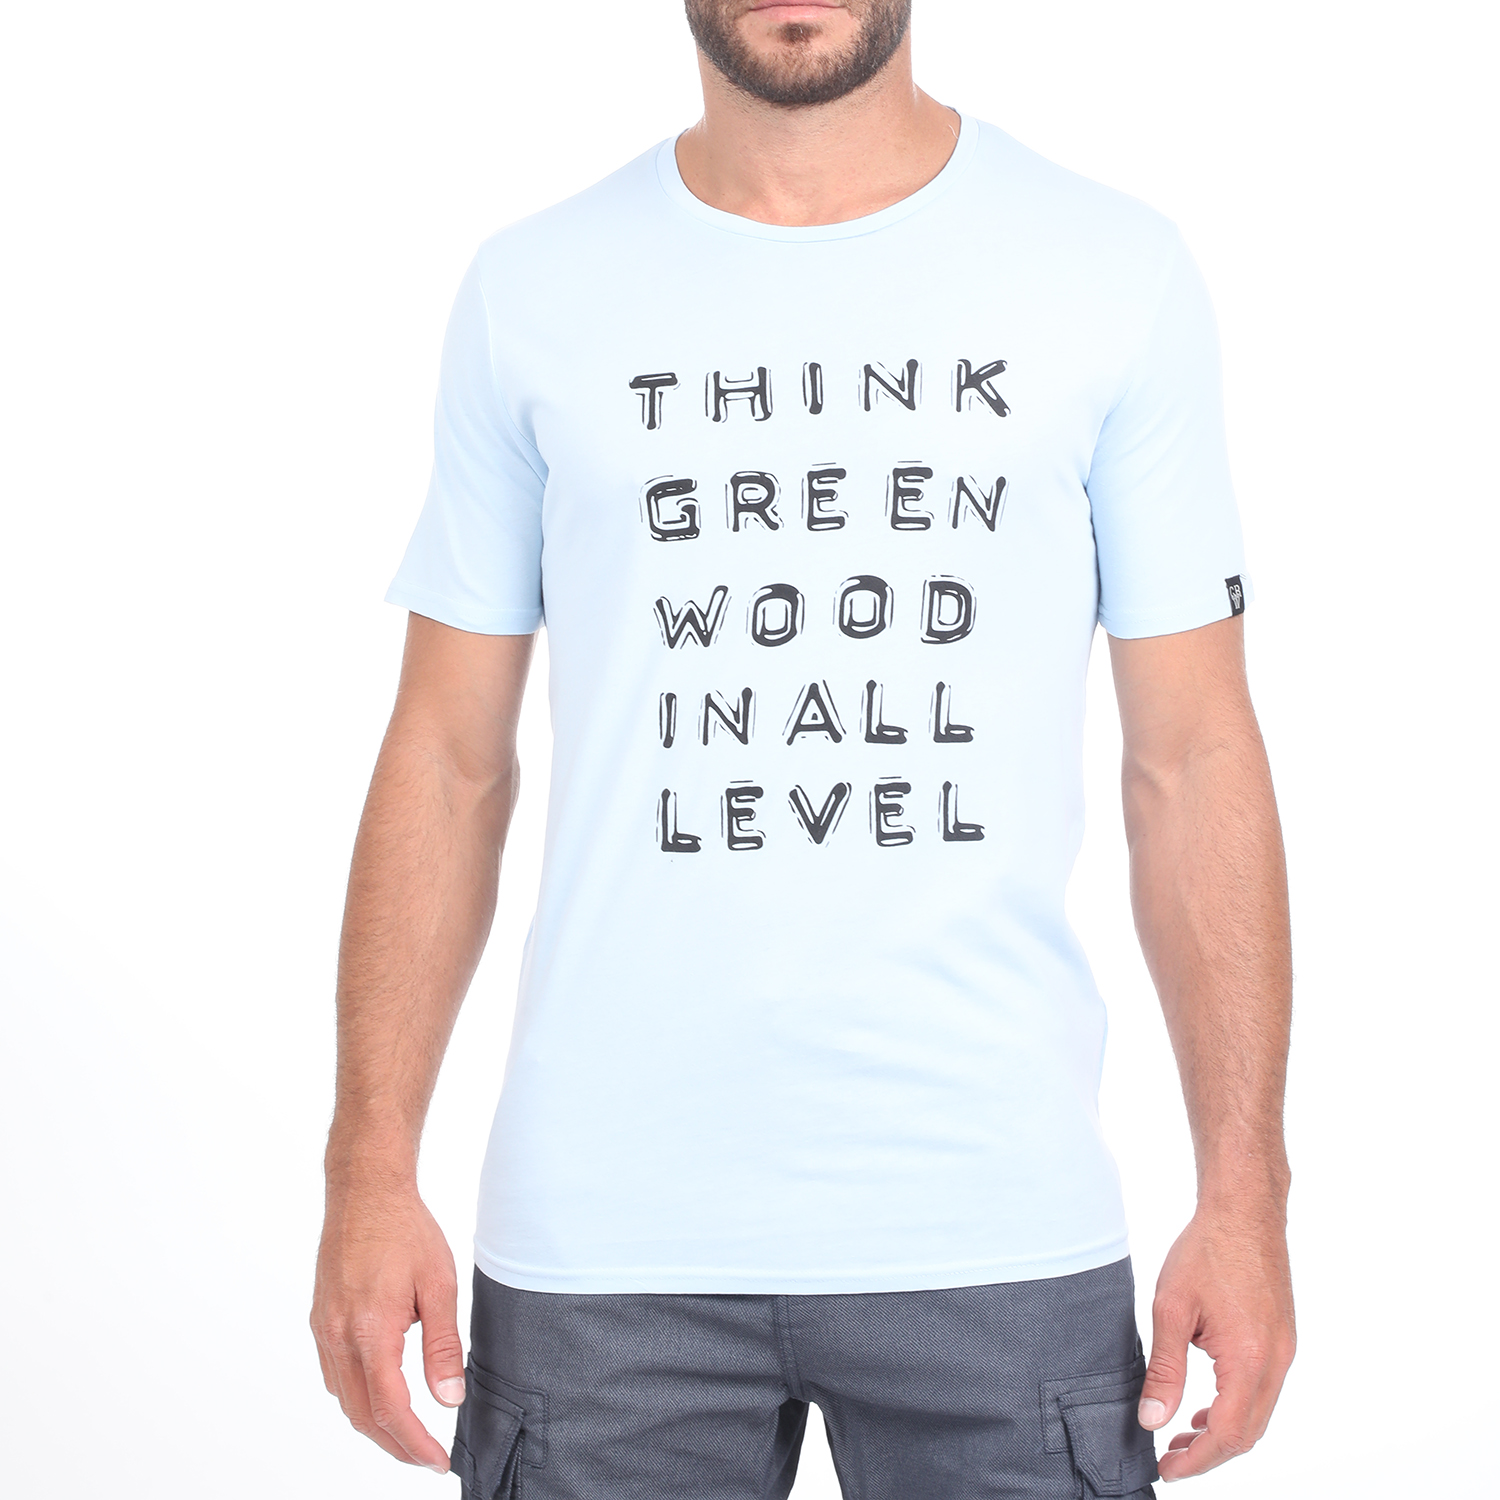 Ανδρικά/Ρούχα/Μπλούζες/Κοντομάνικες GREENWOOD - Ανδρική κοντομάνικη μπλούζα GREENWOOD GRW33 WASHED μπλε